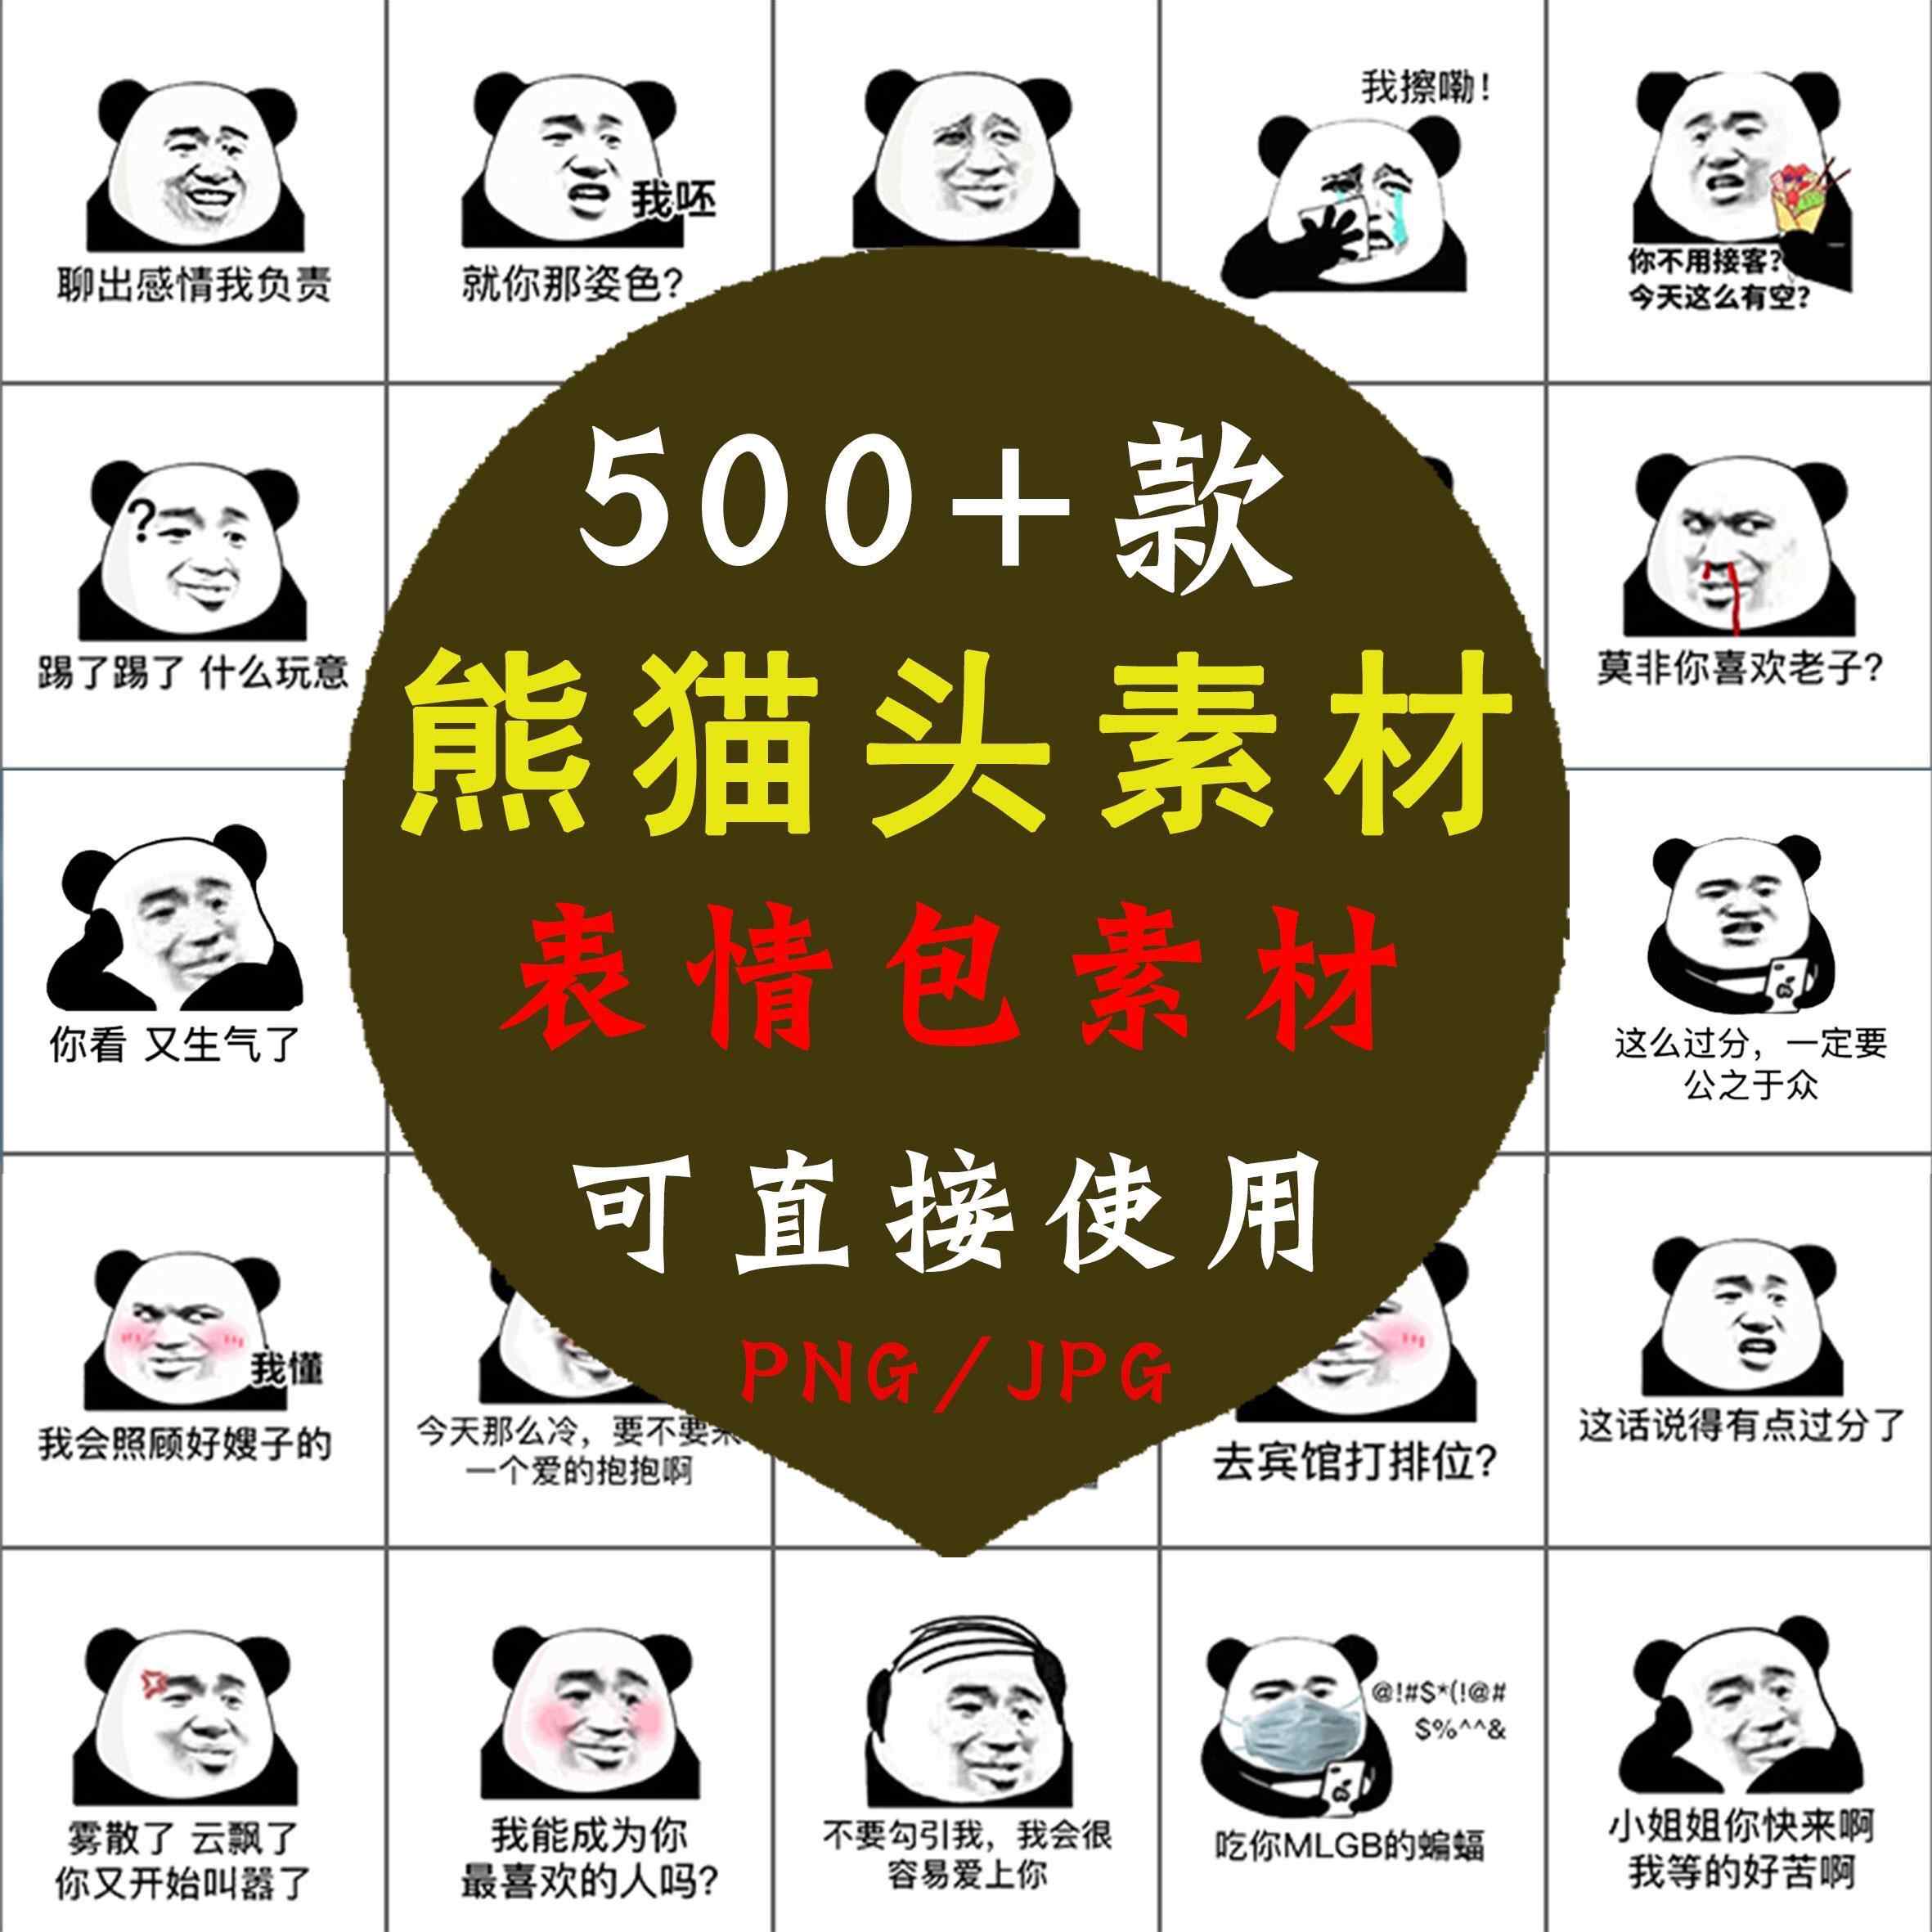 熊猫头像斗图聊天专用表情包 静态搞笑幽默蘑菇头熊猫头素材图片